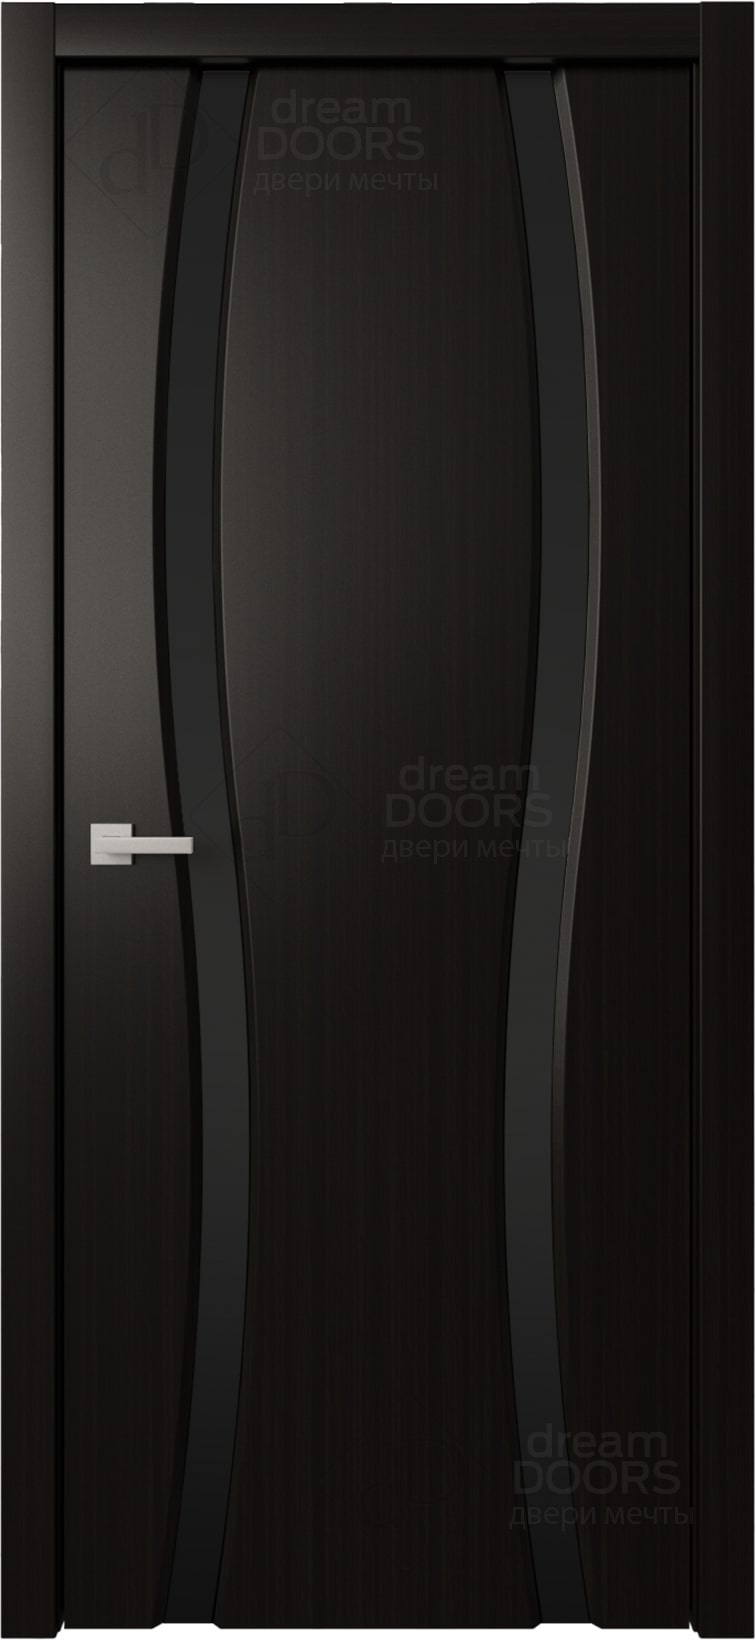 Dream Doors Межкомнатная дверь Сириус 2 узкое ДО, арт. 20082 - фото №1